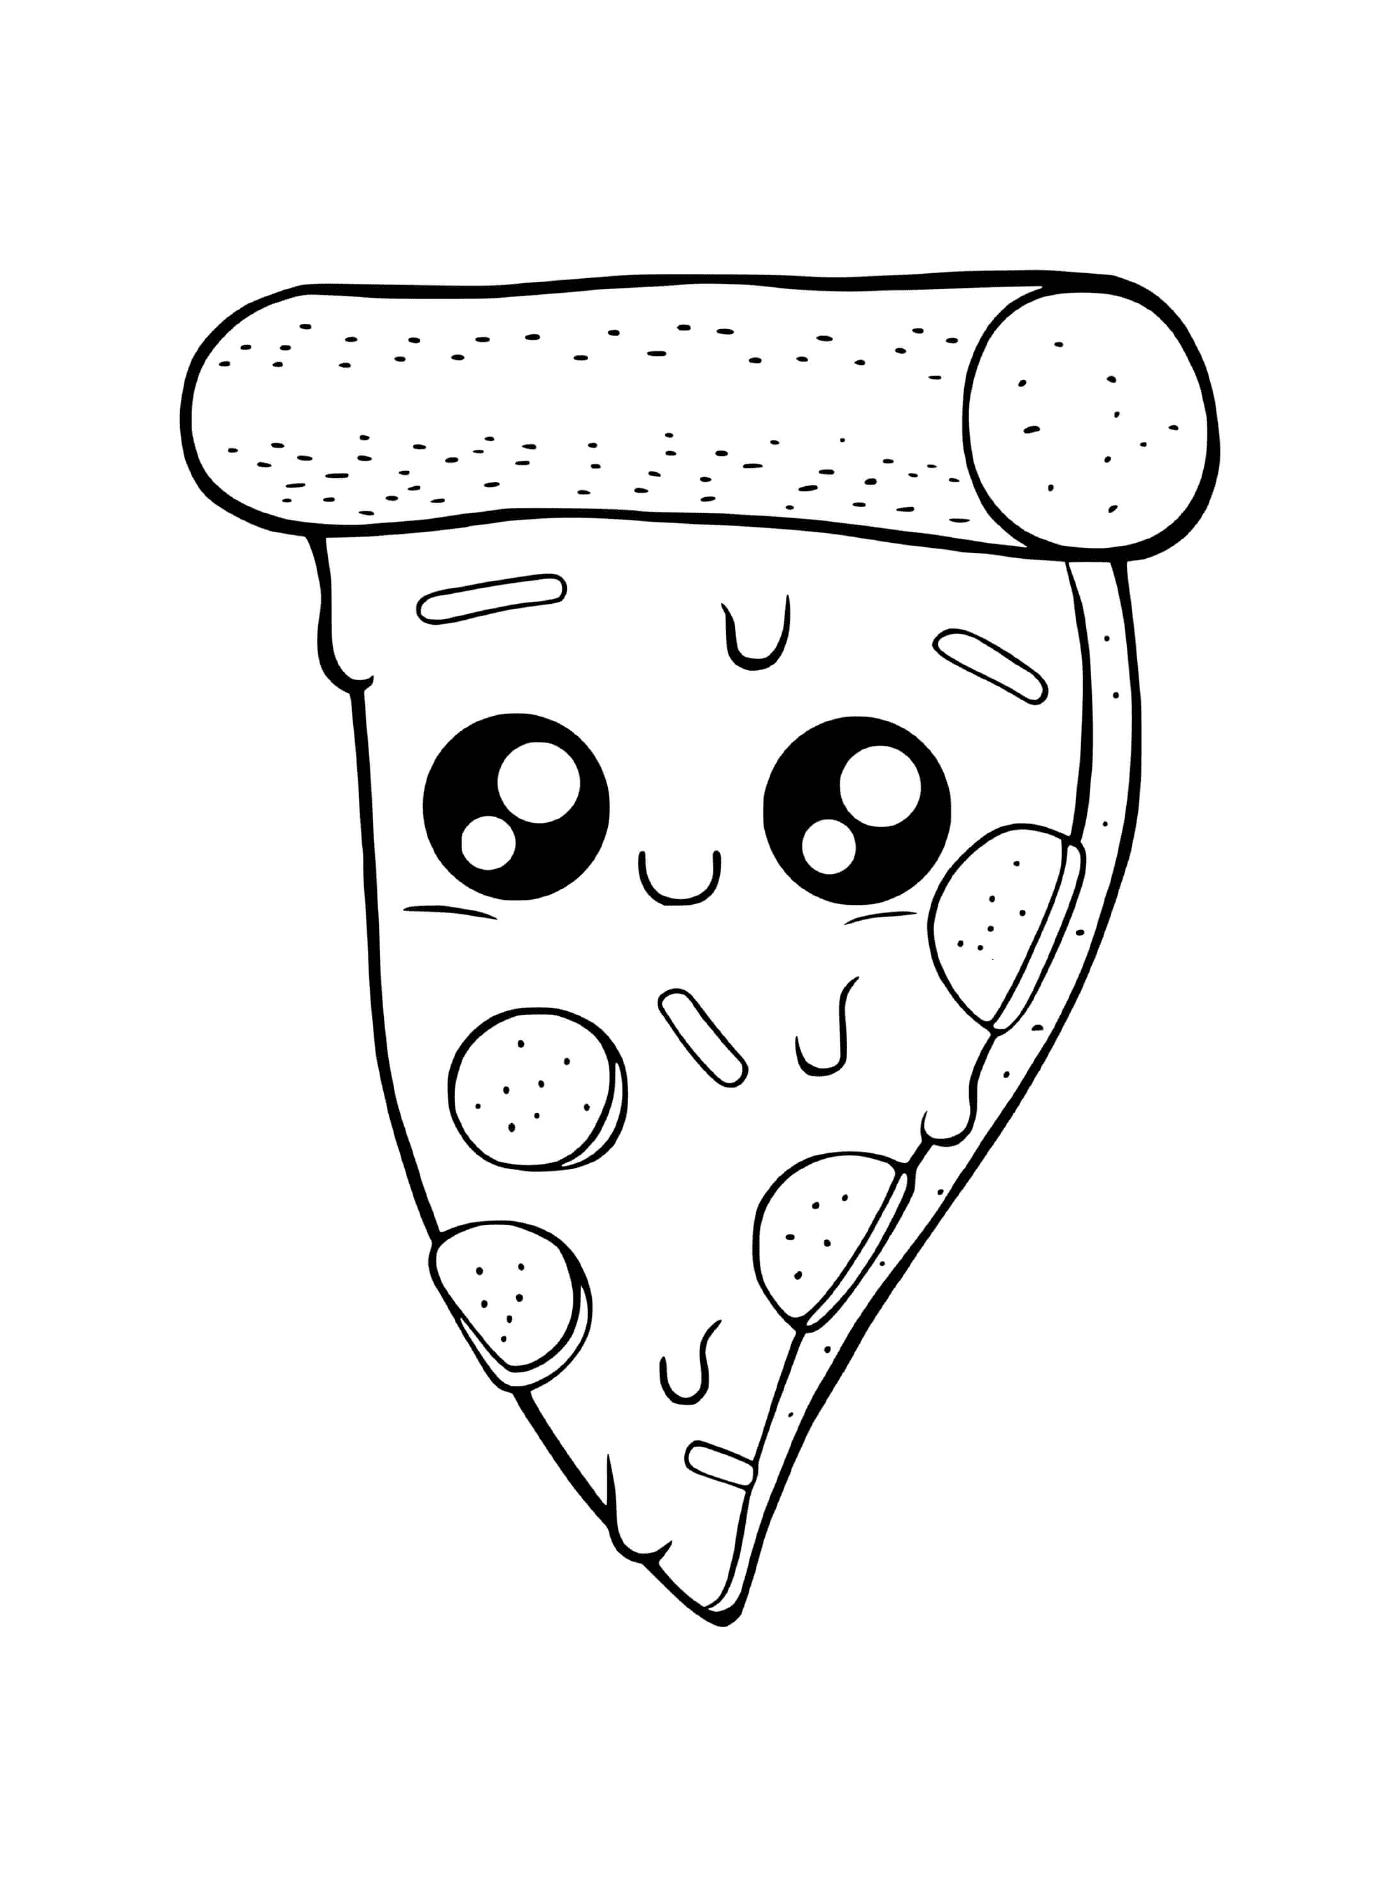  Una pizza con formaggio fuso 